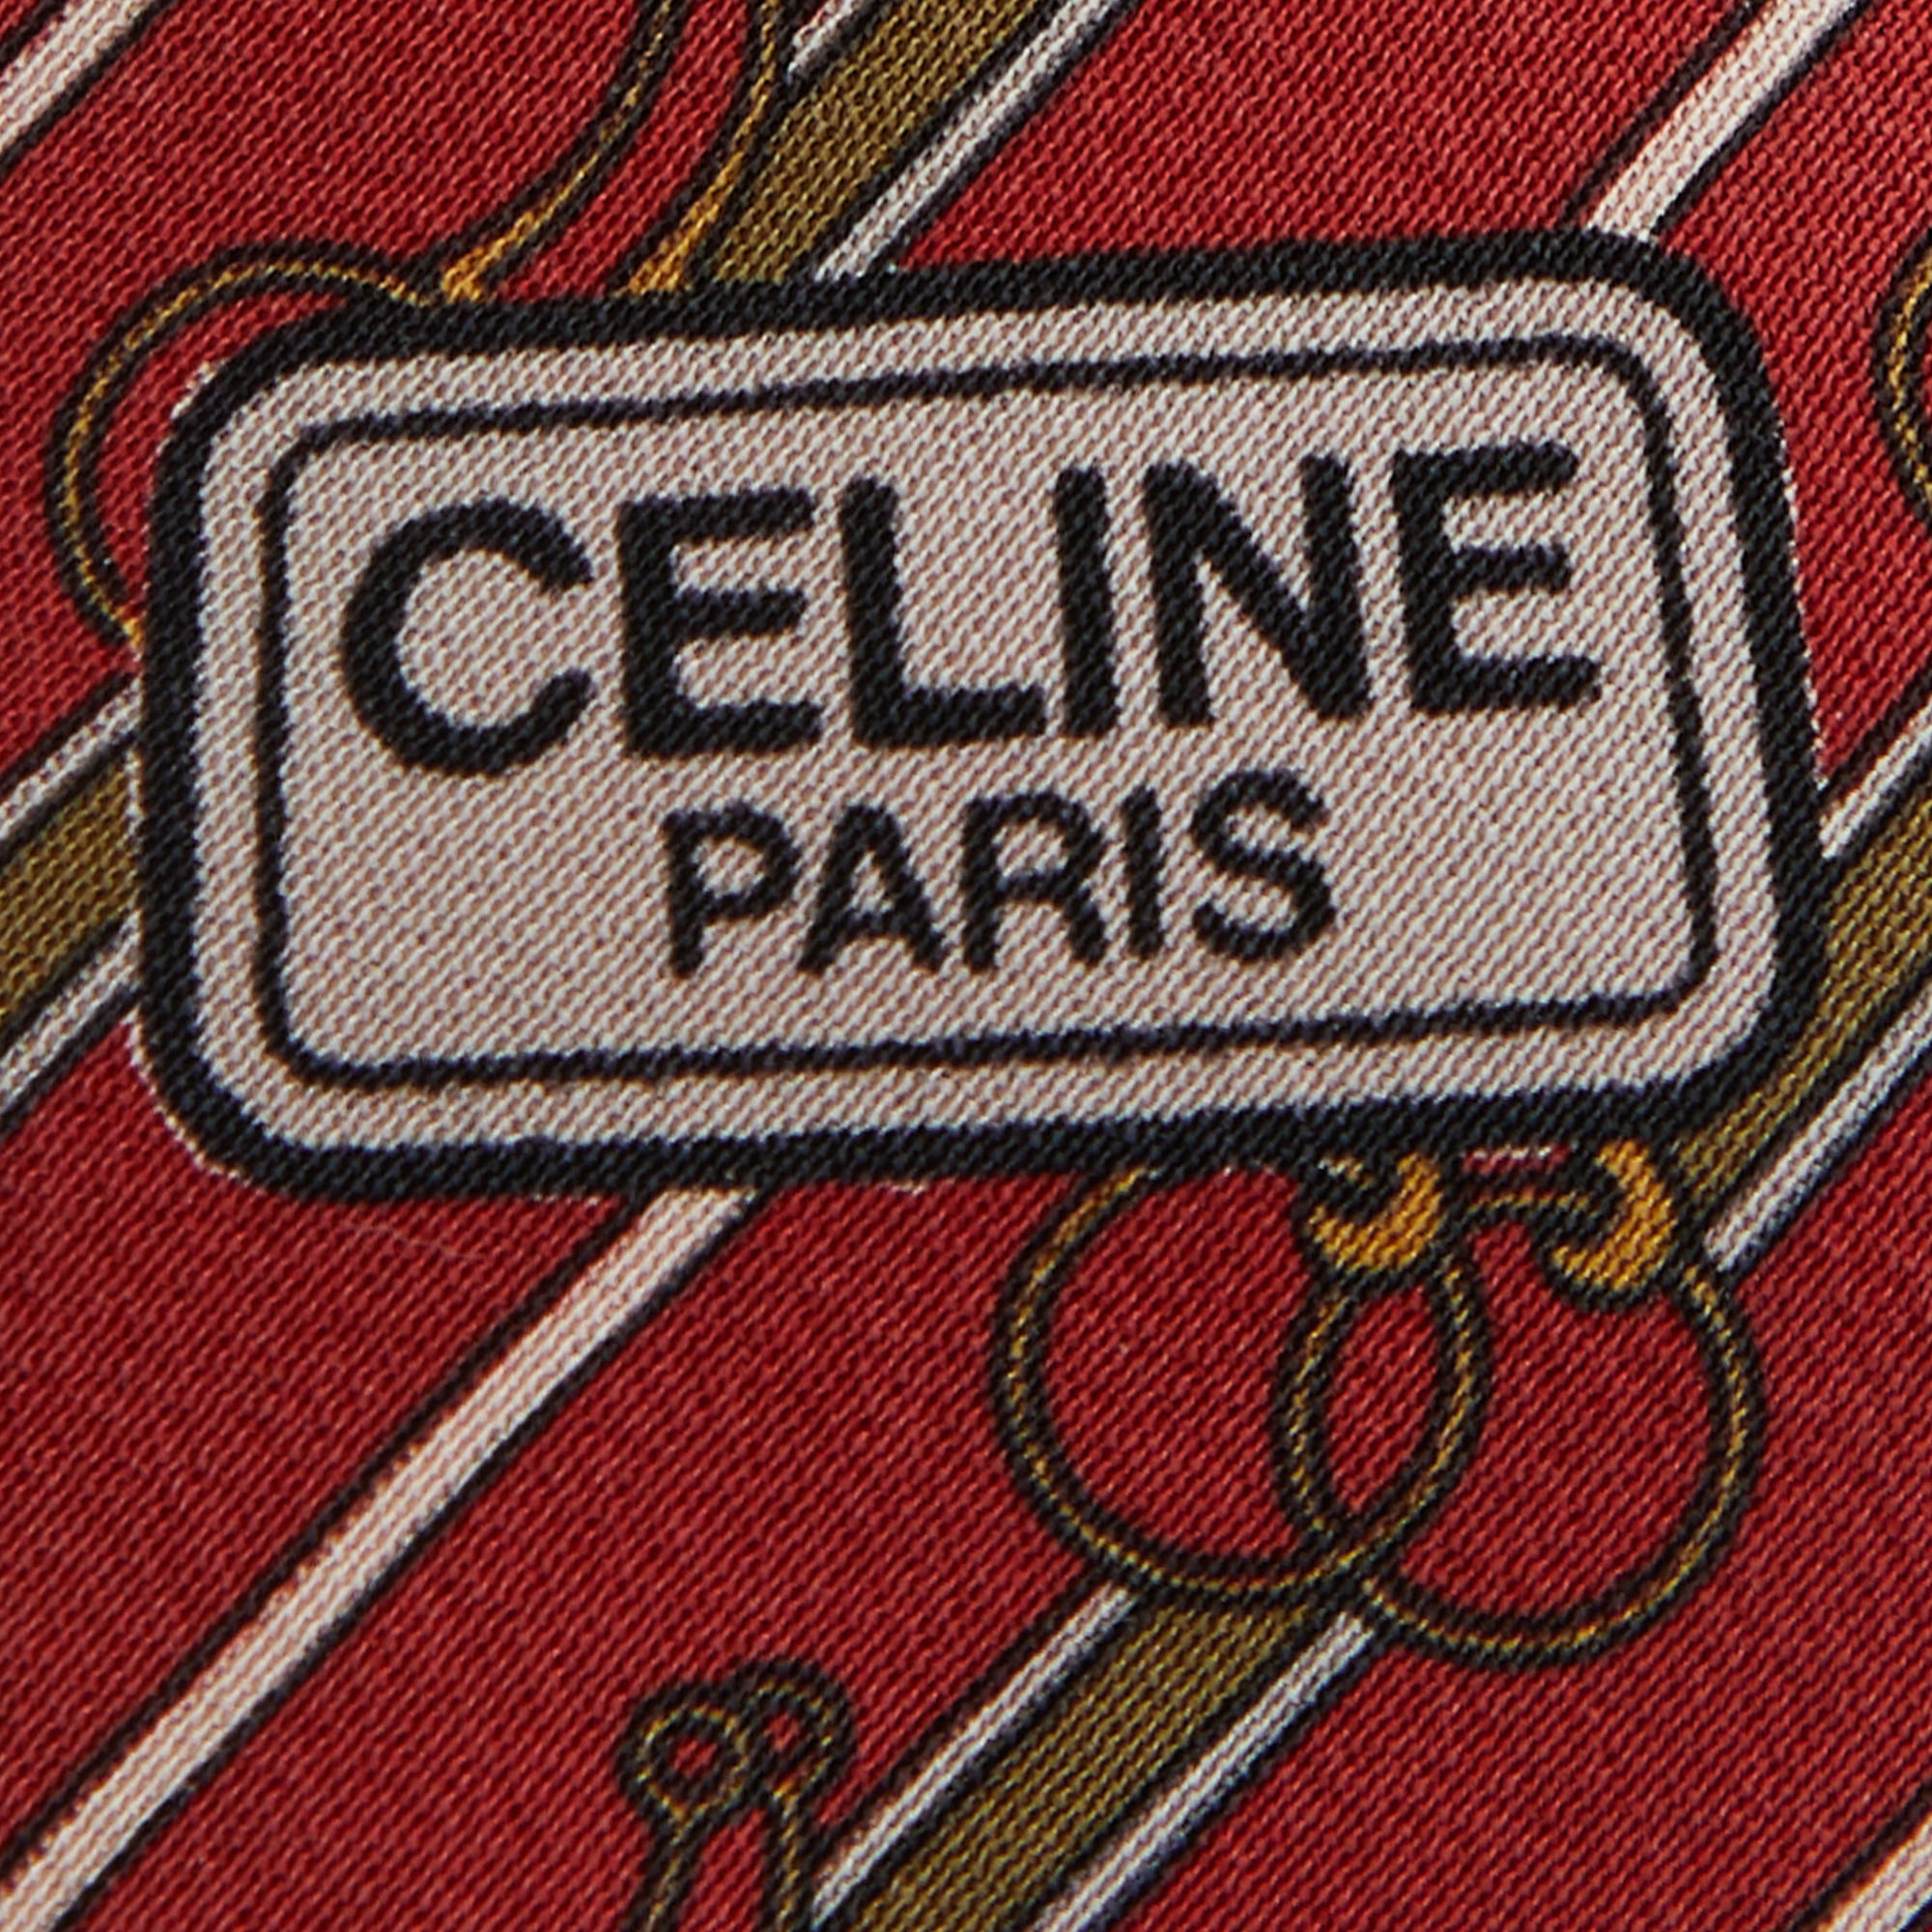 Celine Vintage Red Diagonal Striped Printed Silk Tie